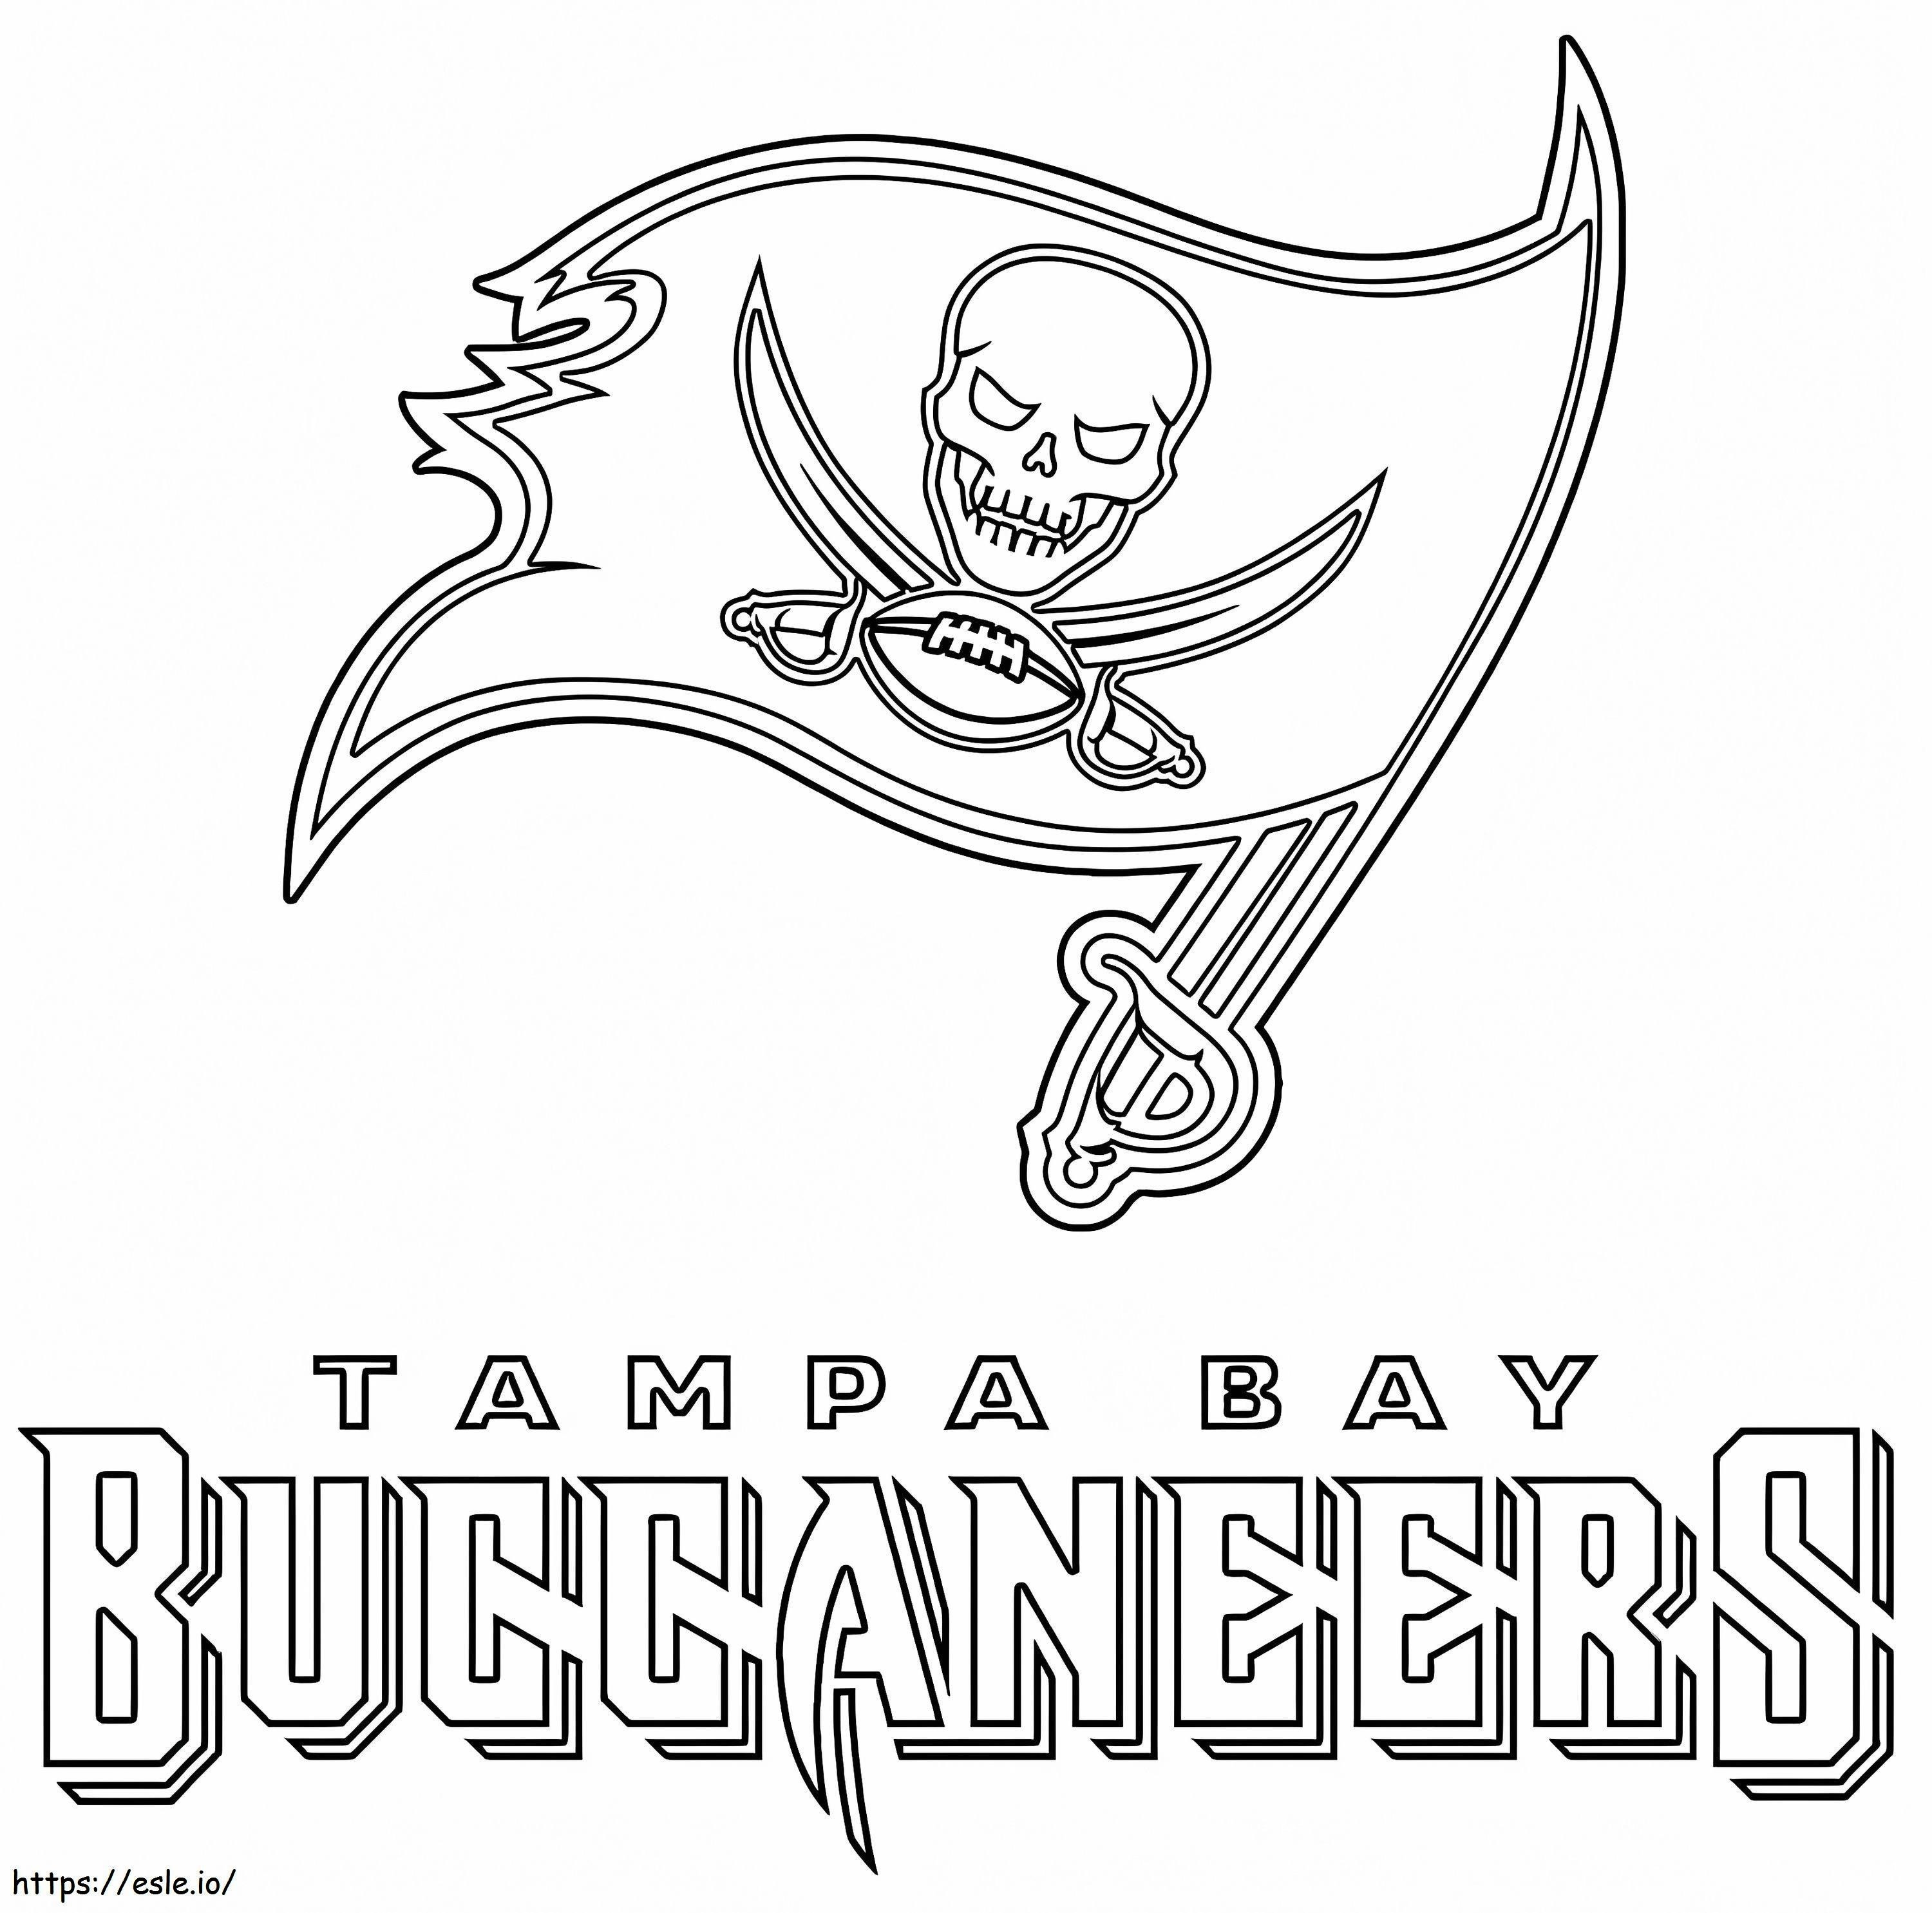 Kostenlose druckbare Tampa Bay Buccaneers ausmalbilder